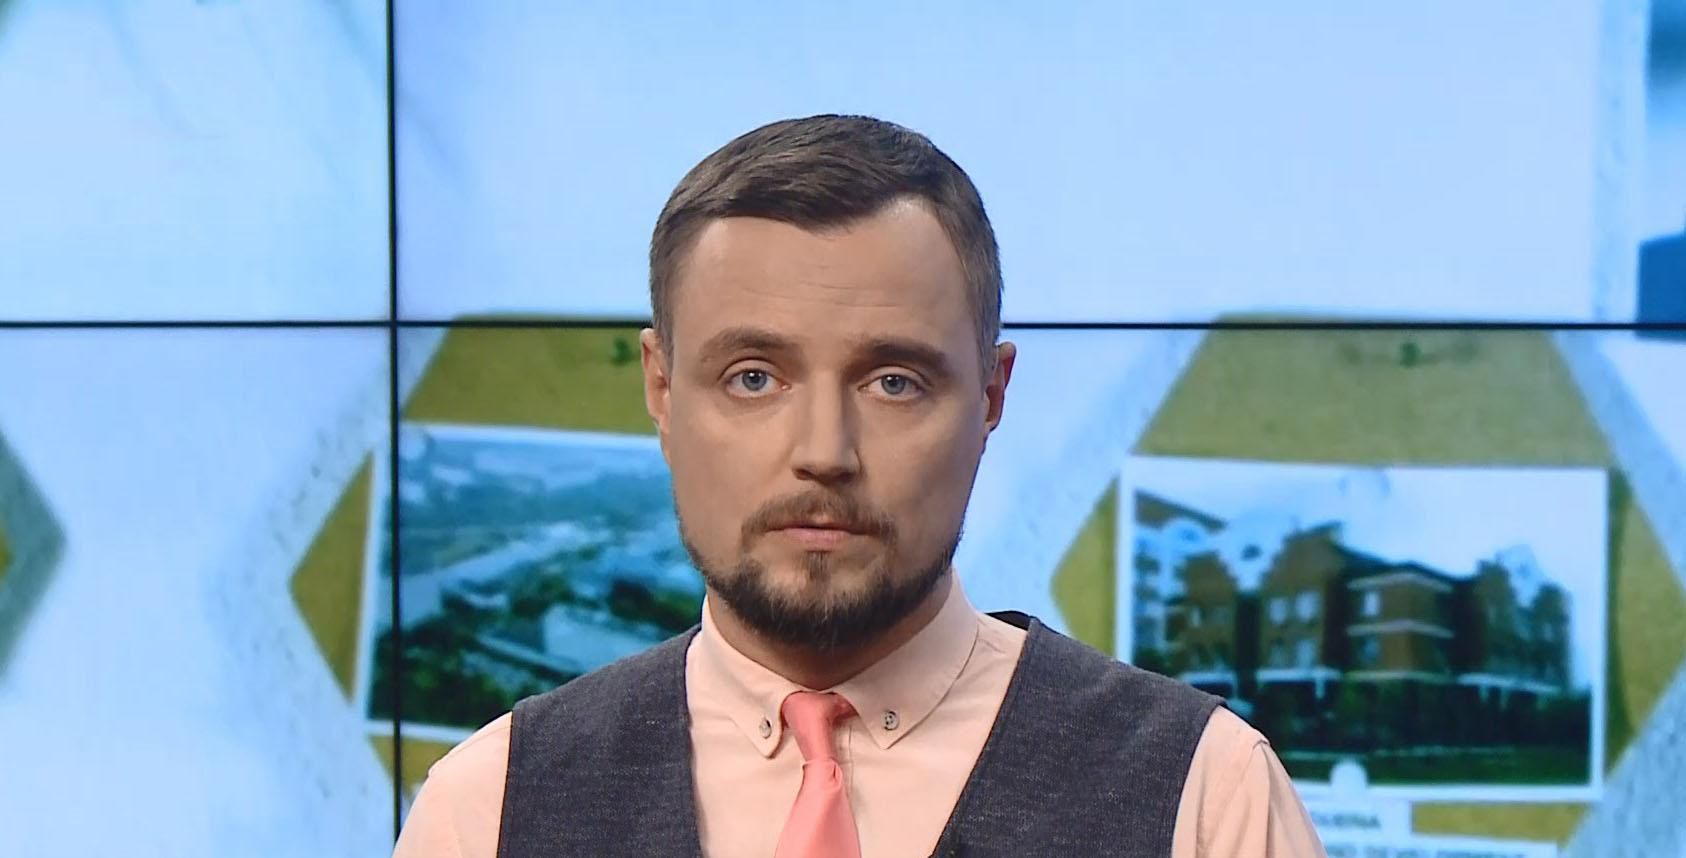 Pro новости: Расследование по отравлению Навального ФСБ. Препятствия Украины к вступлению в ЕС